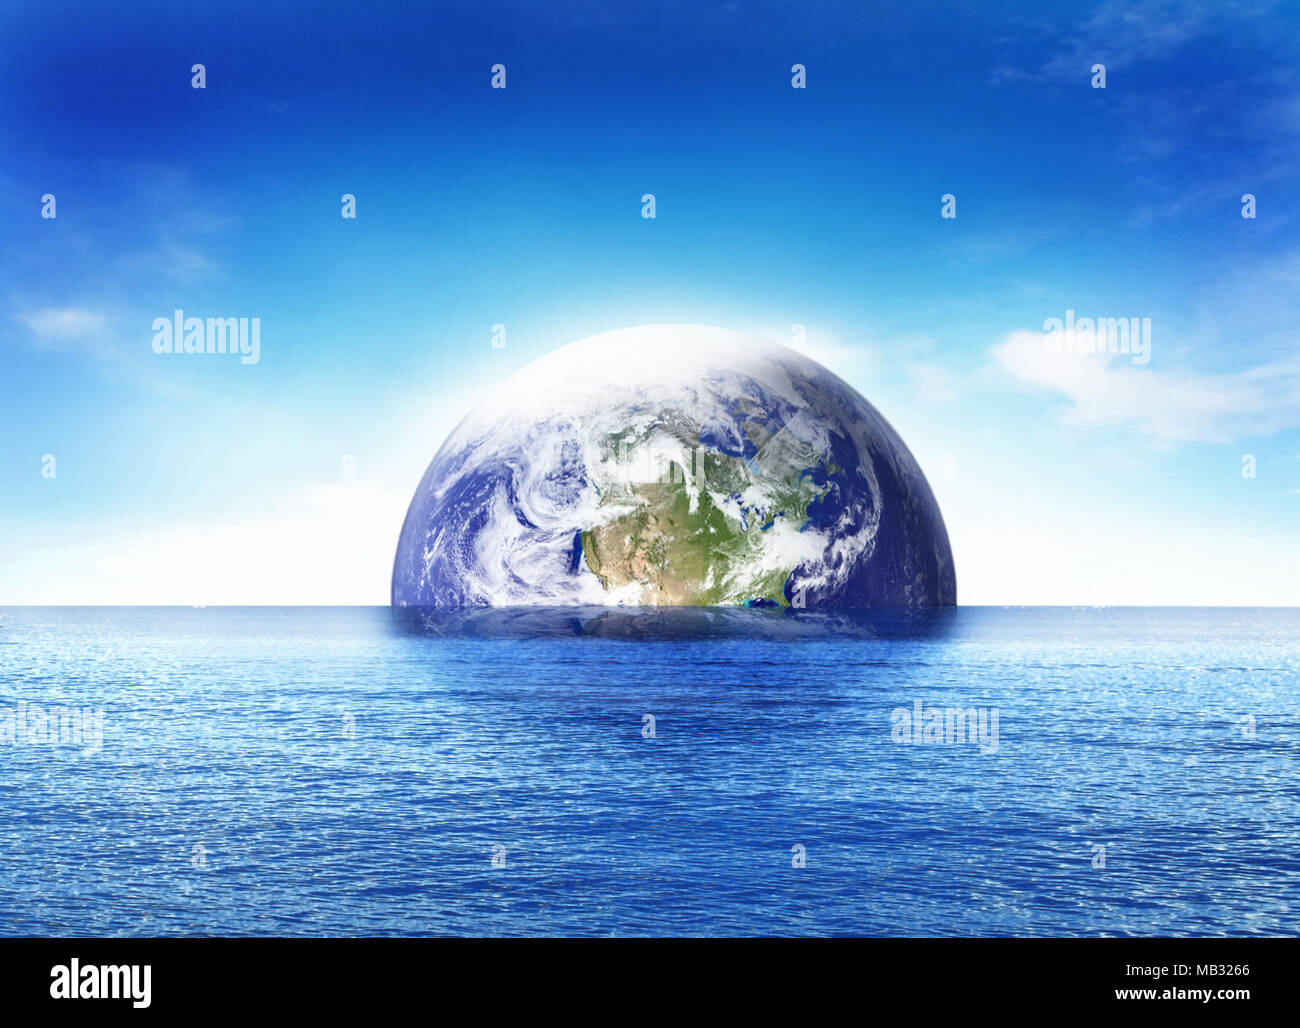 Geburt der Welt oder Doomsday Szene, Untergang der Erde Globus oder Planeten Erde. Blaues Meer und schönen Welt weltweit steigend. Stockfoto